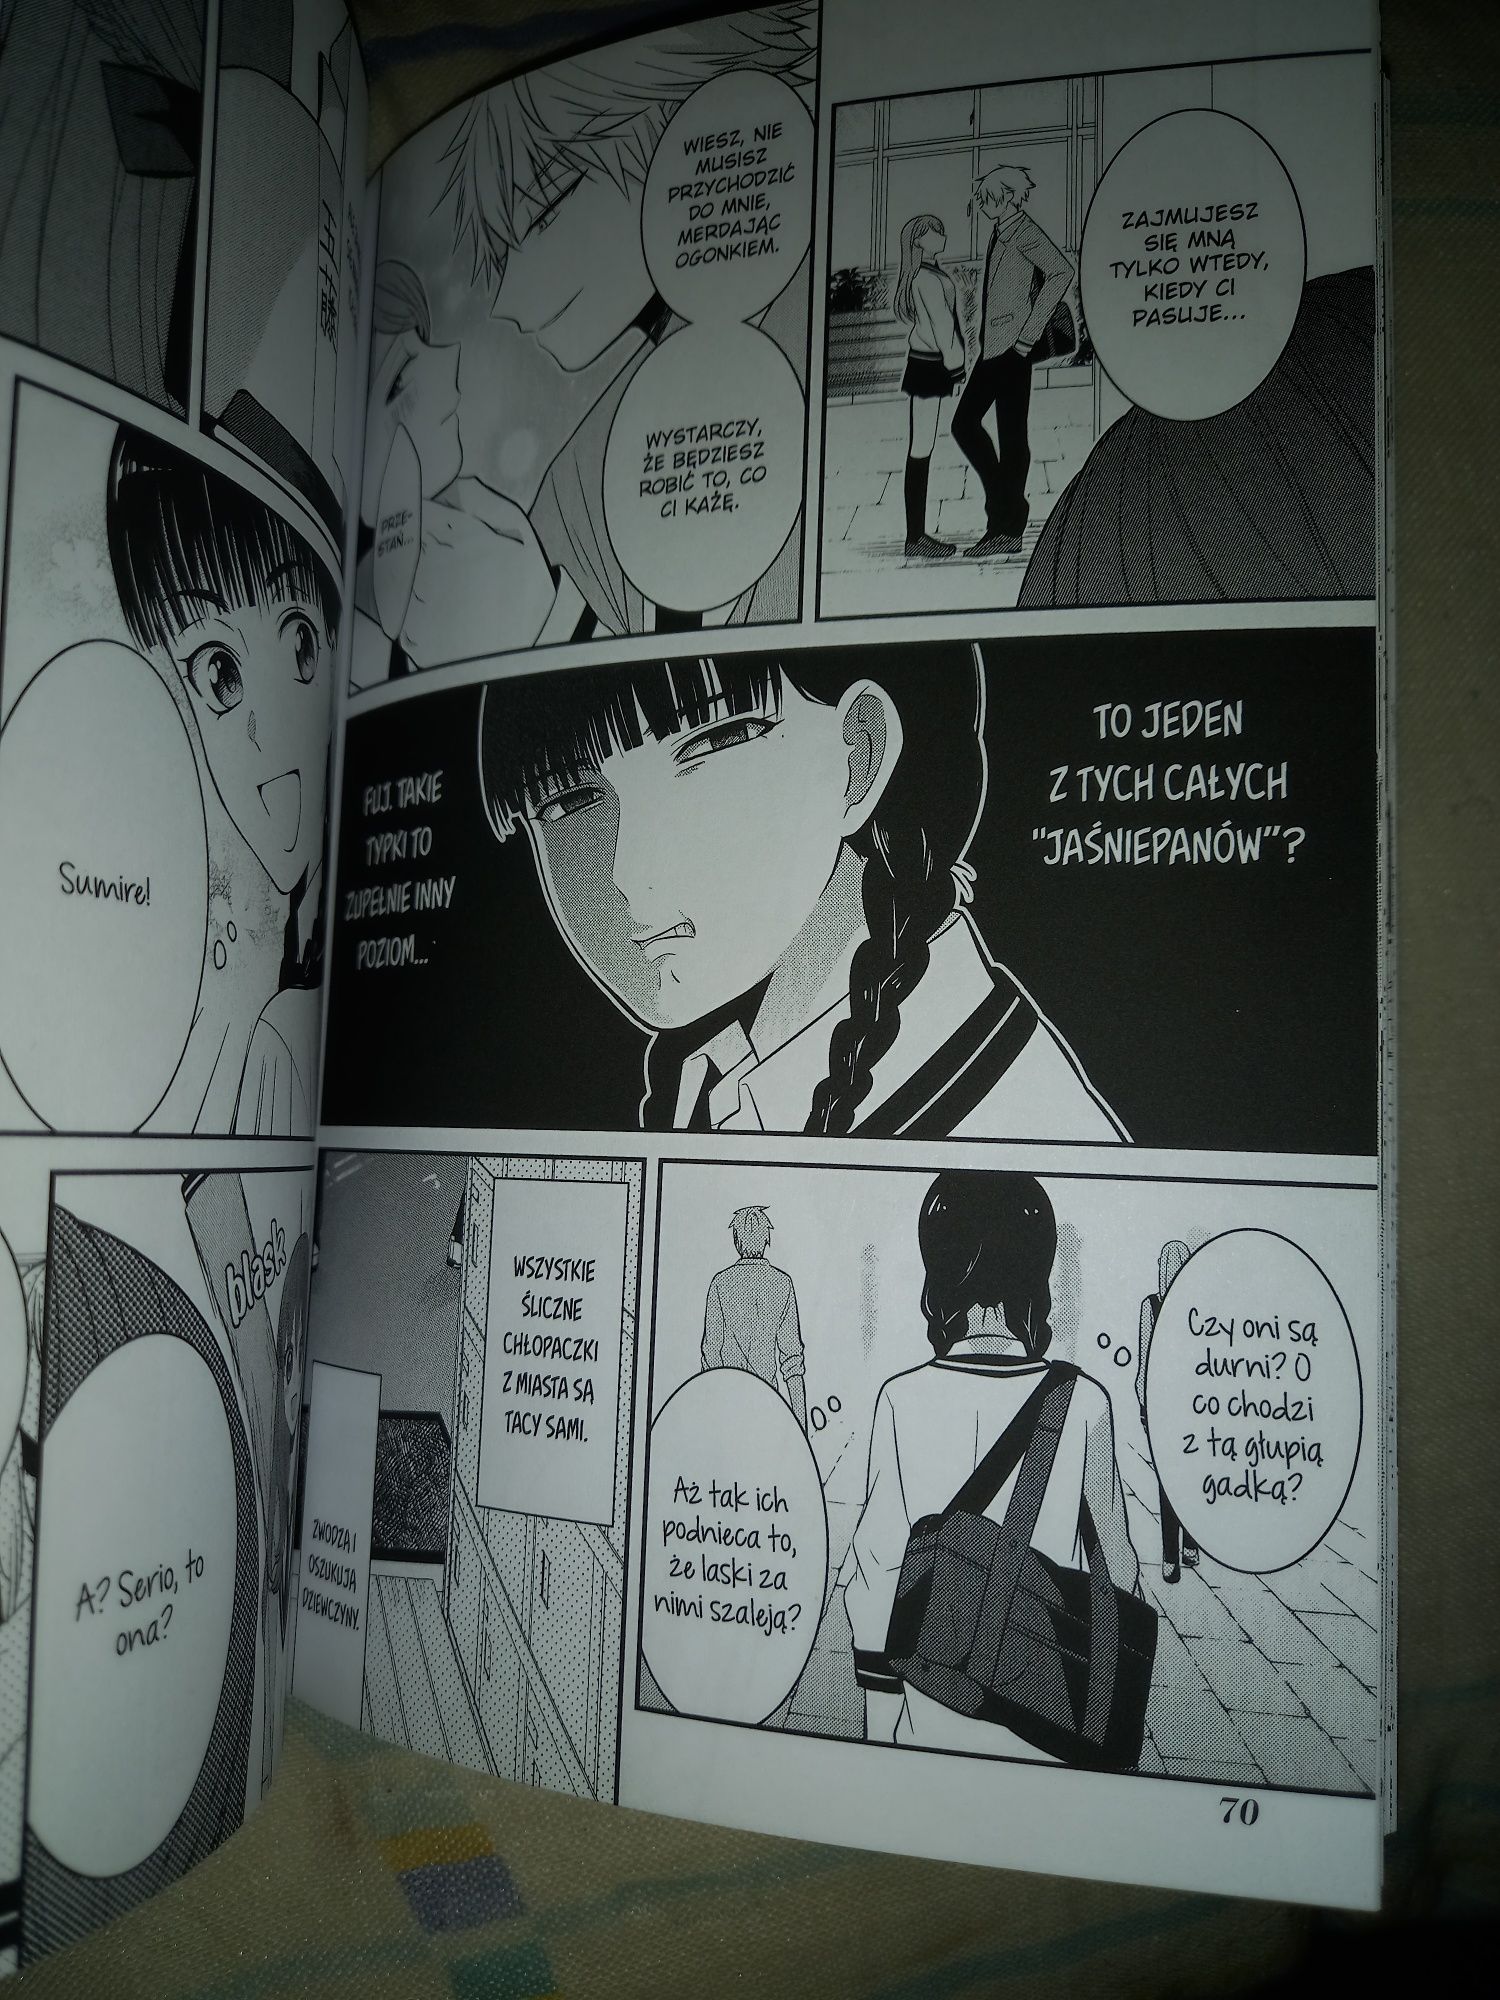 Przemiana w Jaśniepana tom 1 manga Dango szkolne życie romans komedia